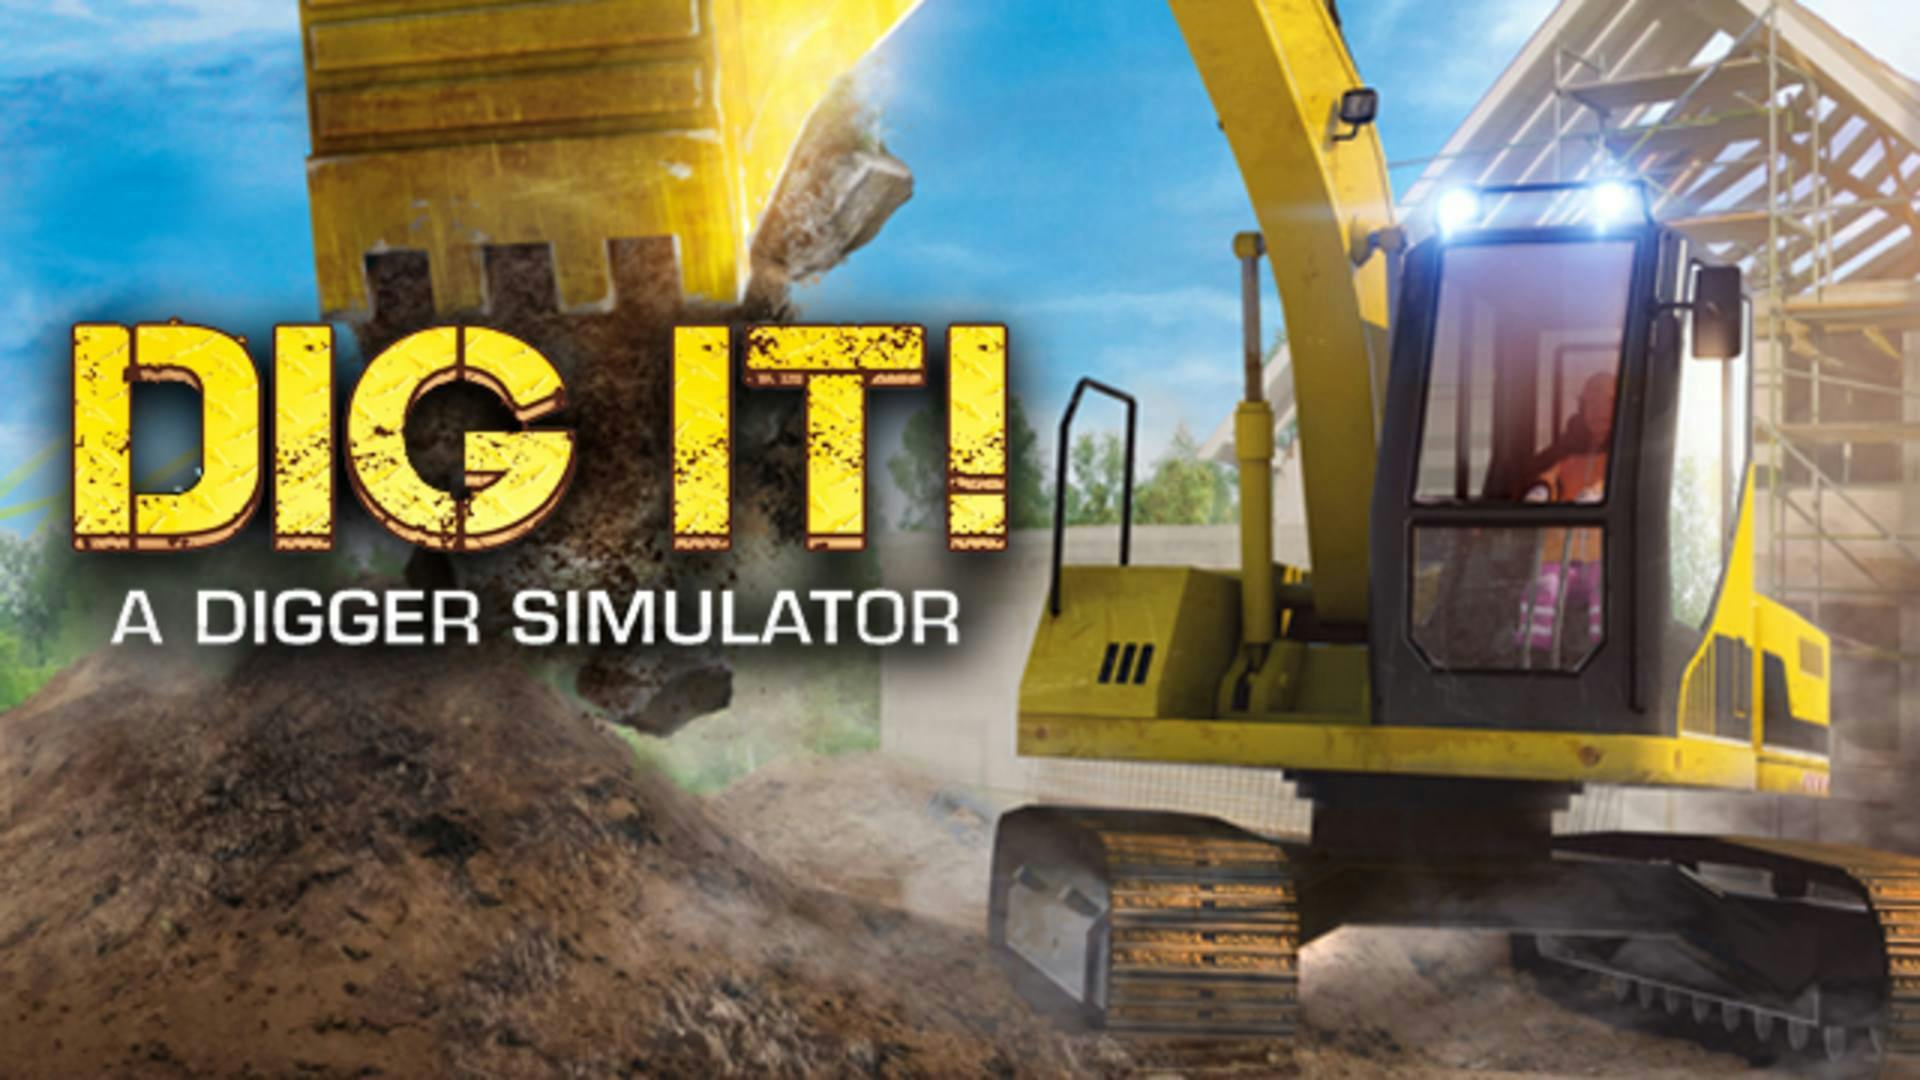 5 dig. Digger тренажеры. Экскаватор VR. Digger (игра). I dig it игра.